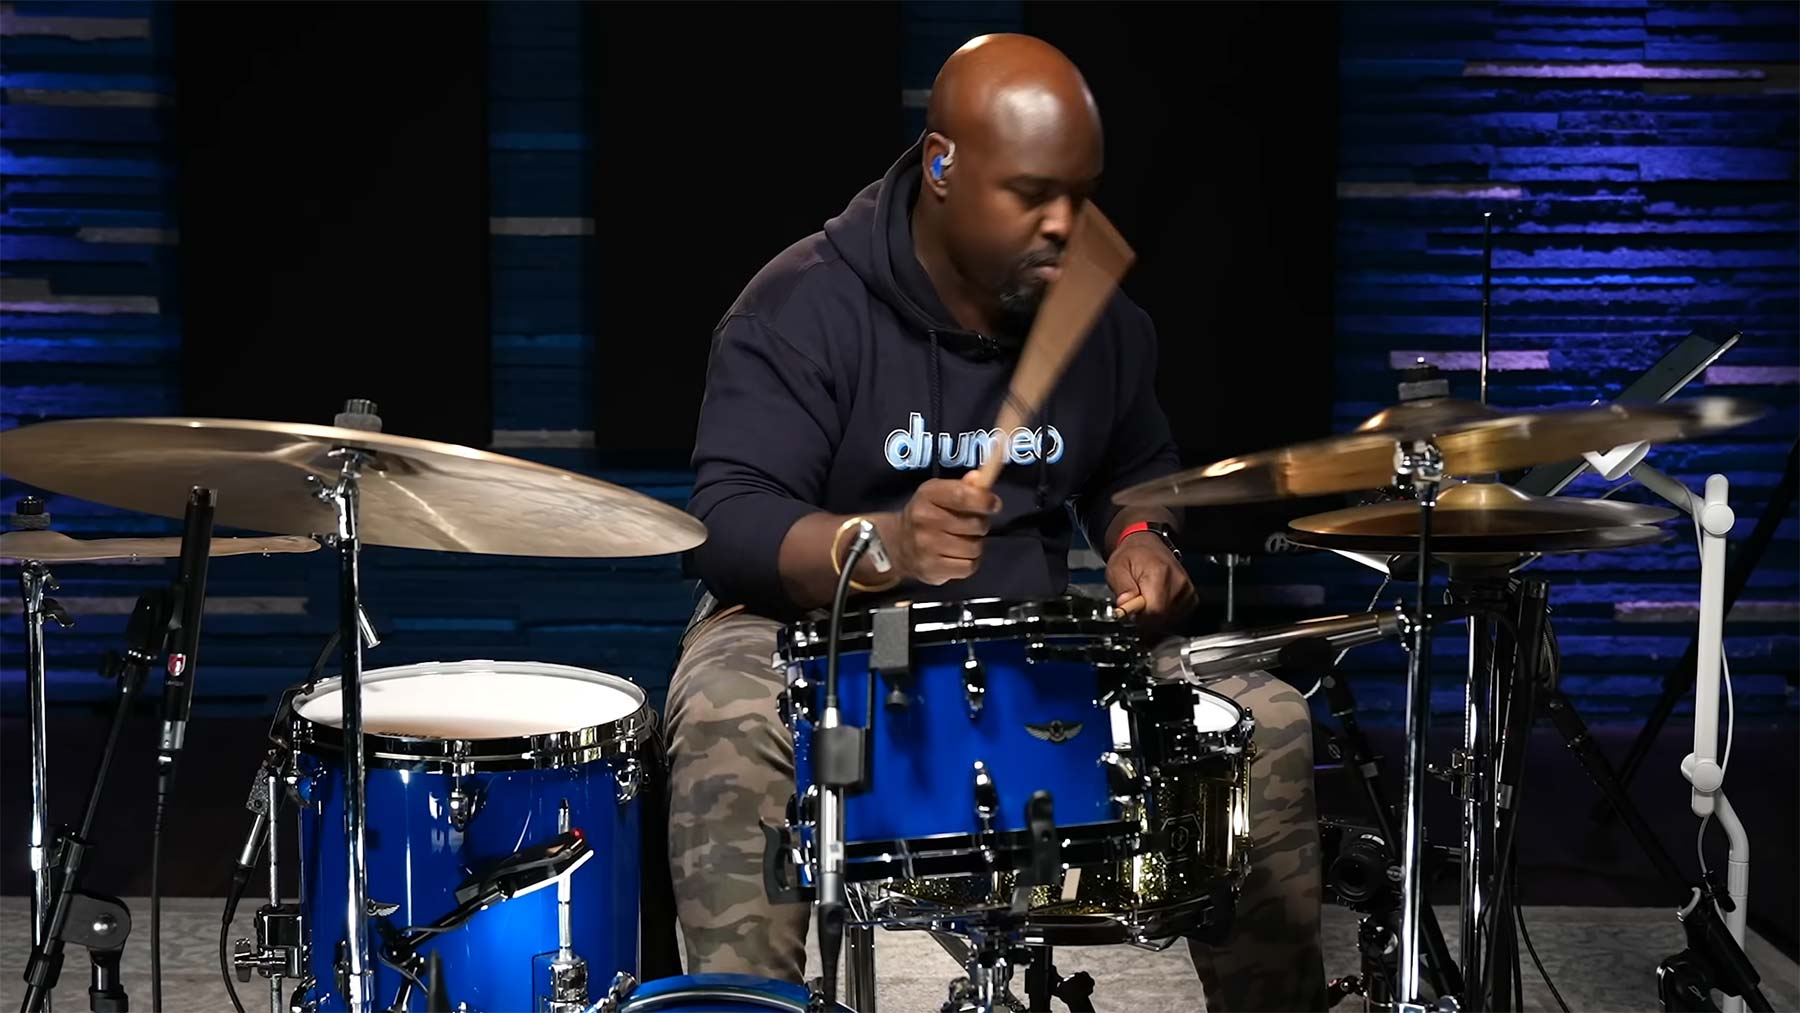 Jazz-Schlagzeuger spielt „In Bloom“, ohne den Song zu kennen